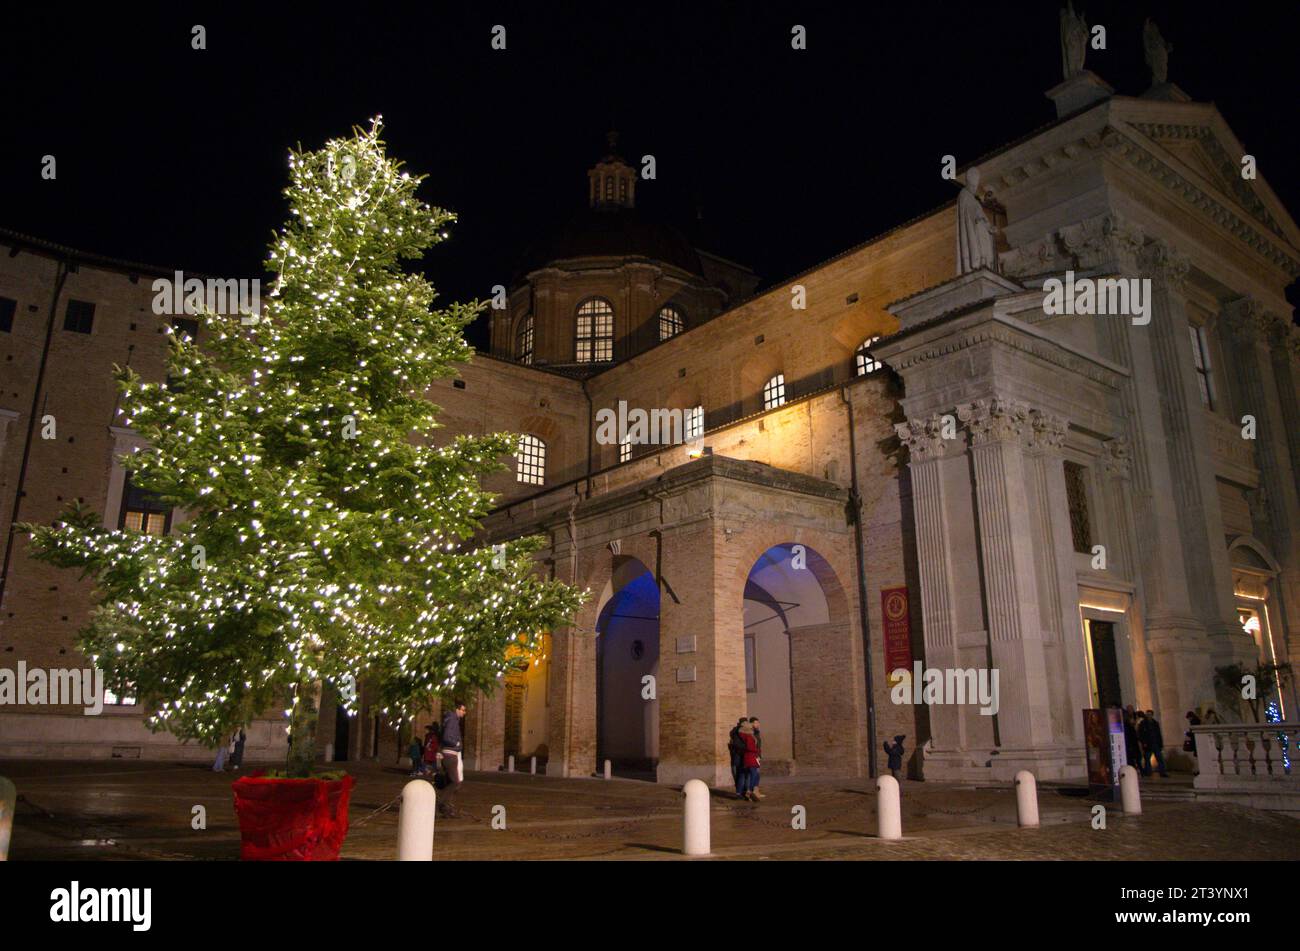 Albero di Natale illuminato accanto al duomo di Urbino Stock Photo